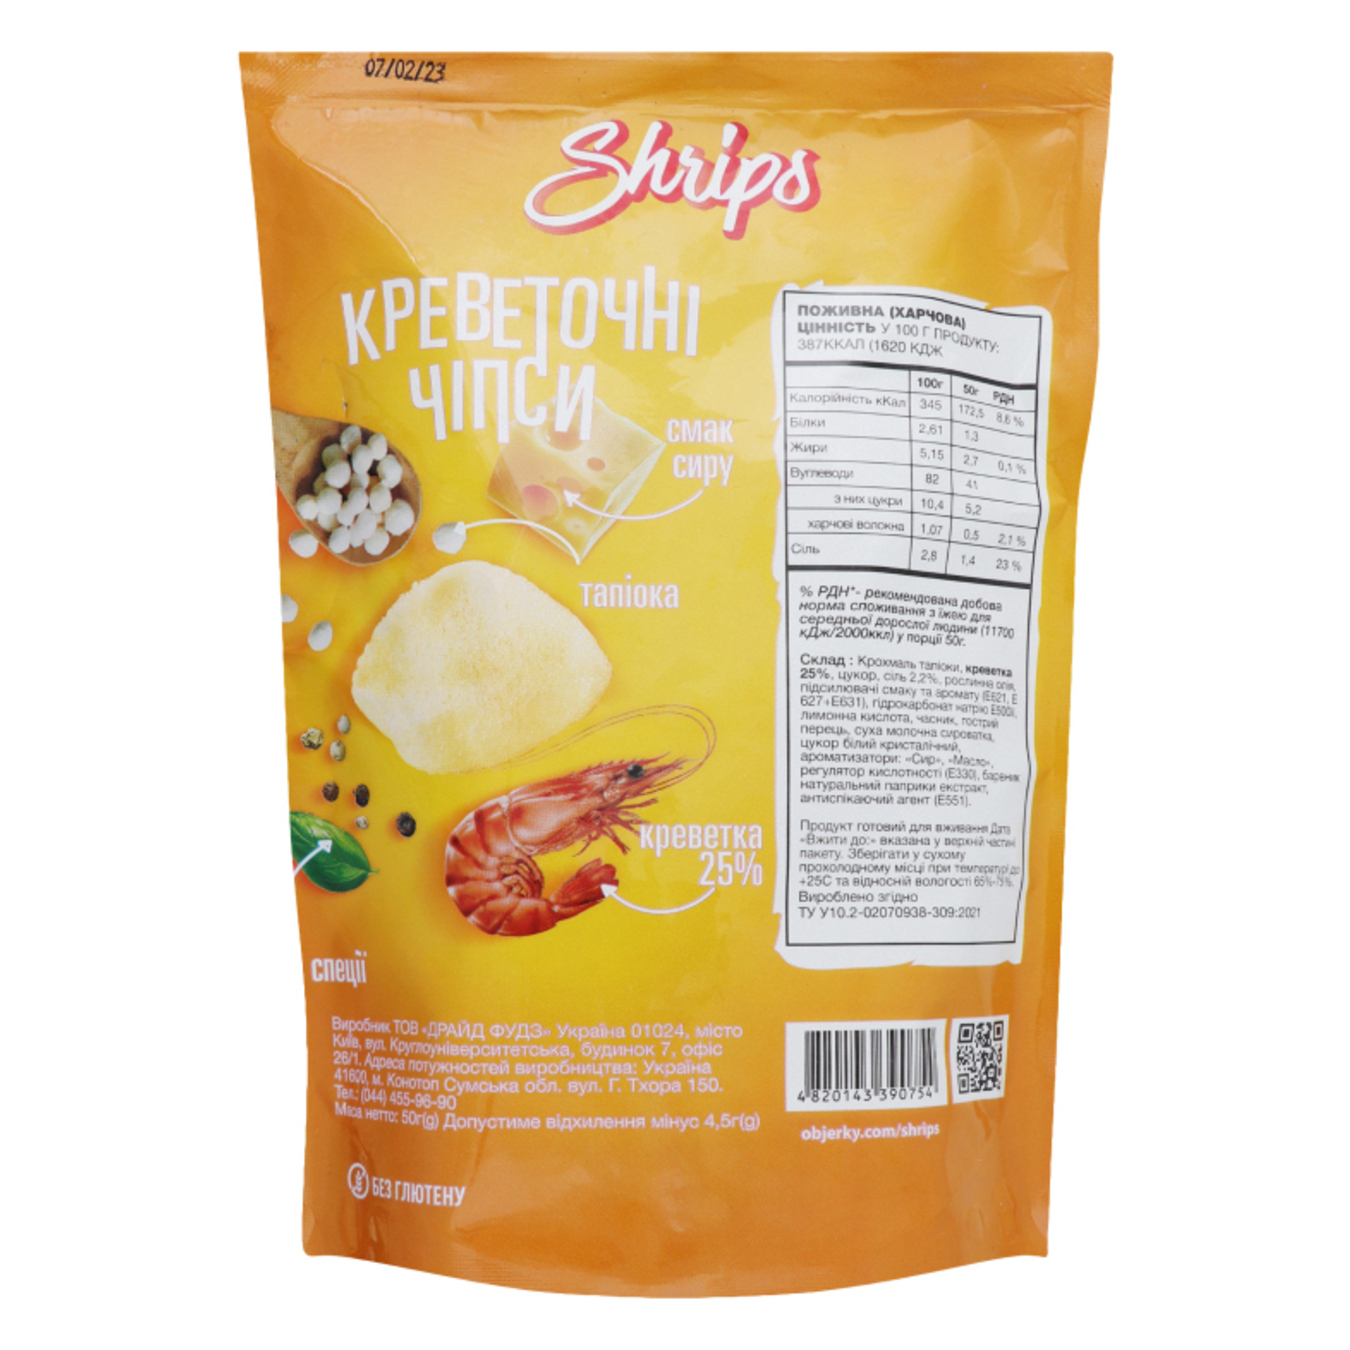 Shrimp chips Shrips taste of cheese 50g 4